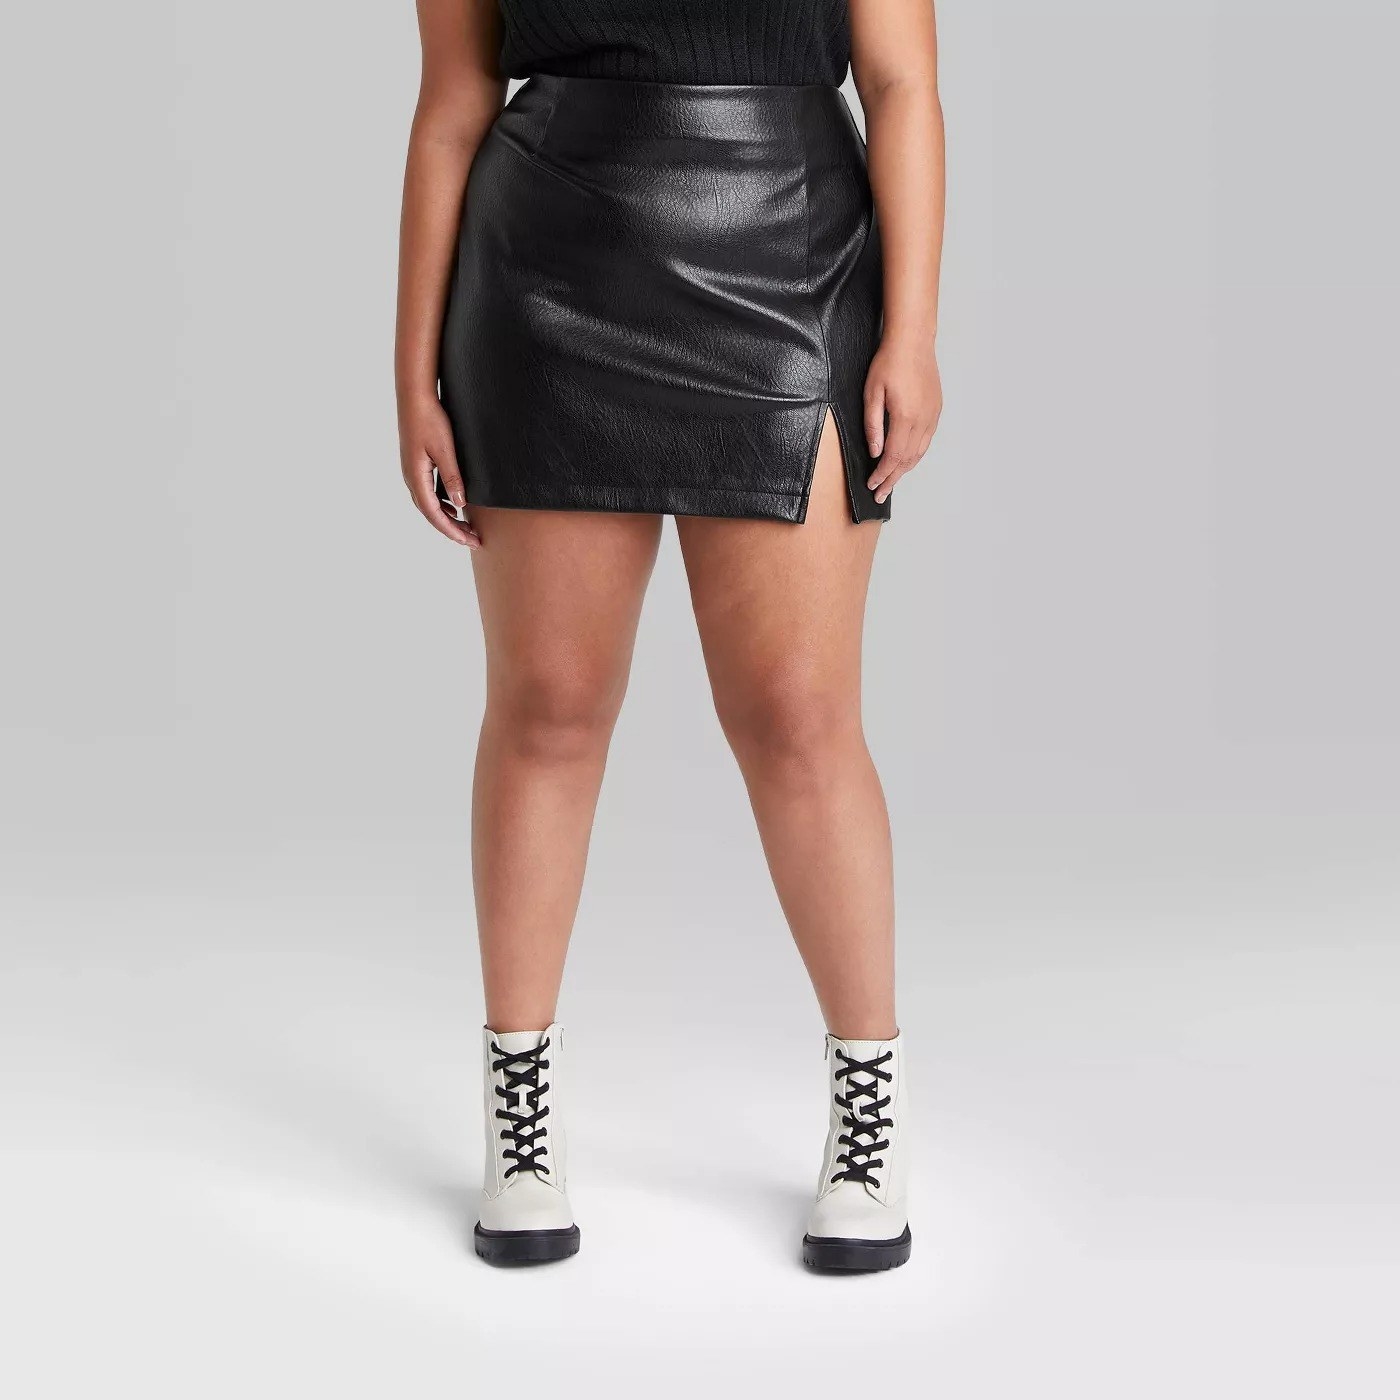 model wearing the skirt in black